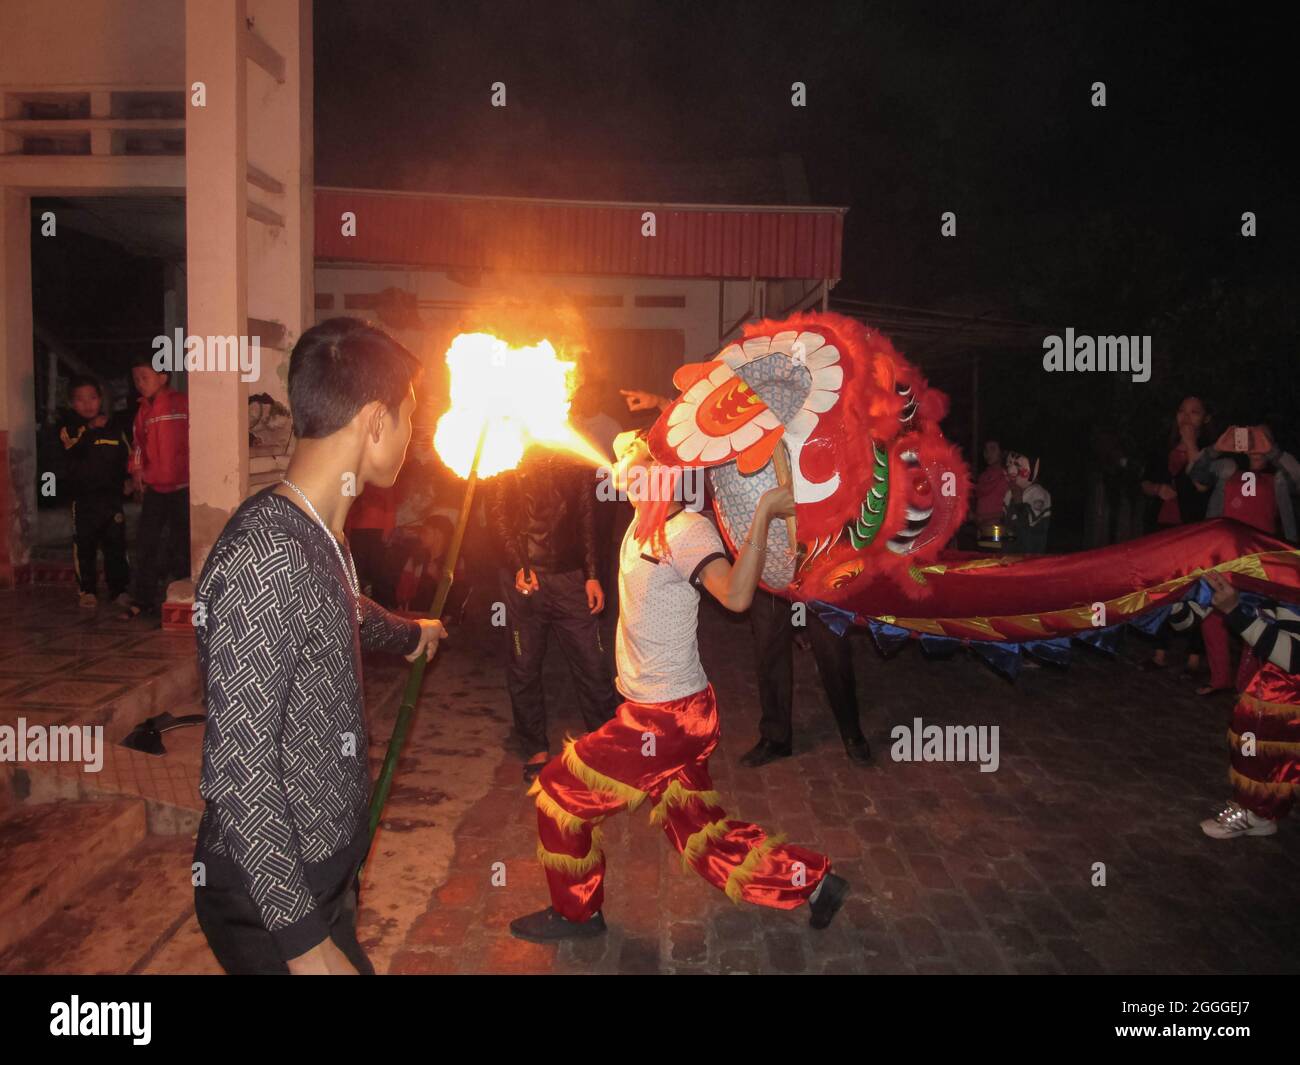 https://c8.alamy.com/compfr/2gggej7/hai-duong-vietnam-18-fevrier-2015-le-lion-danse-avec-le-feu-dans-le-petit-village-du-nouvel-an-chinois-de-2015-dans-la-province-de-hai-duong-vietnam-2gggej7.jpg